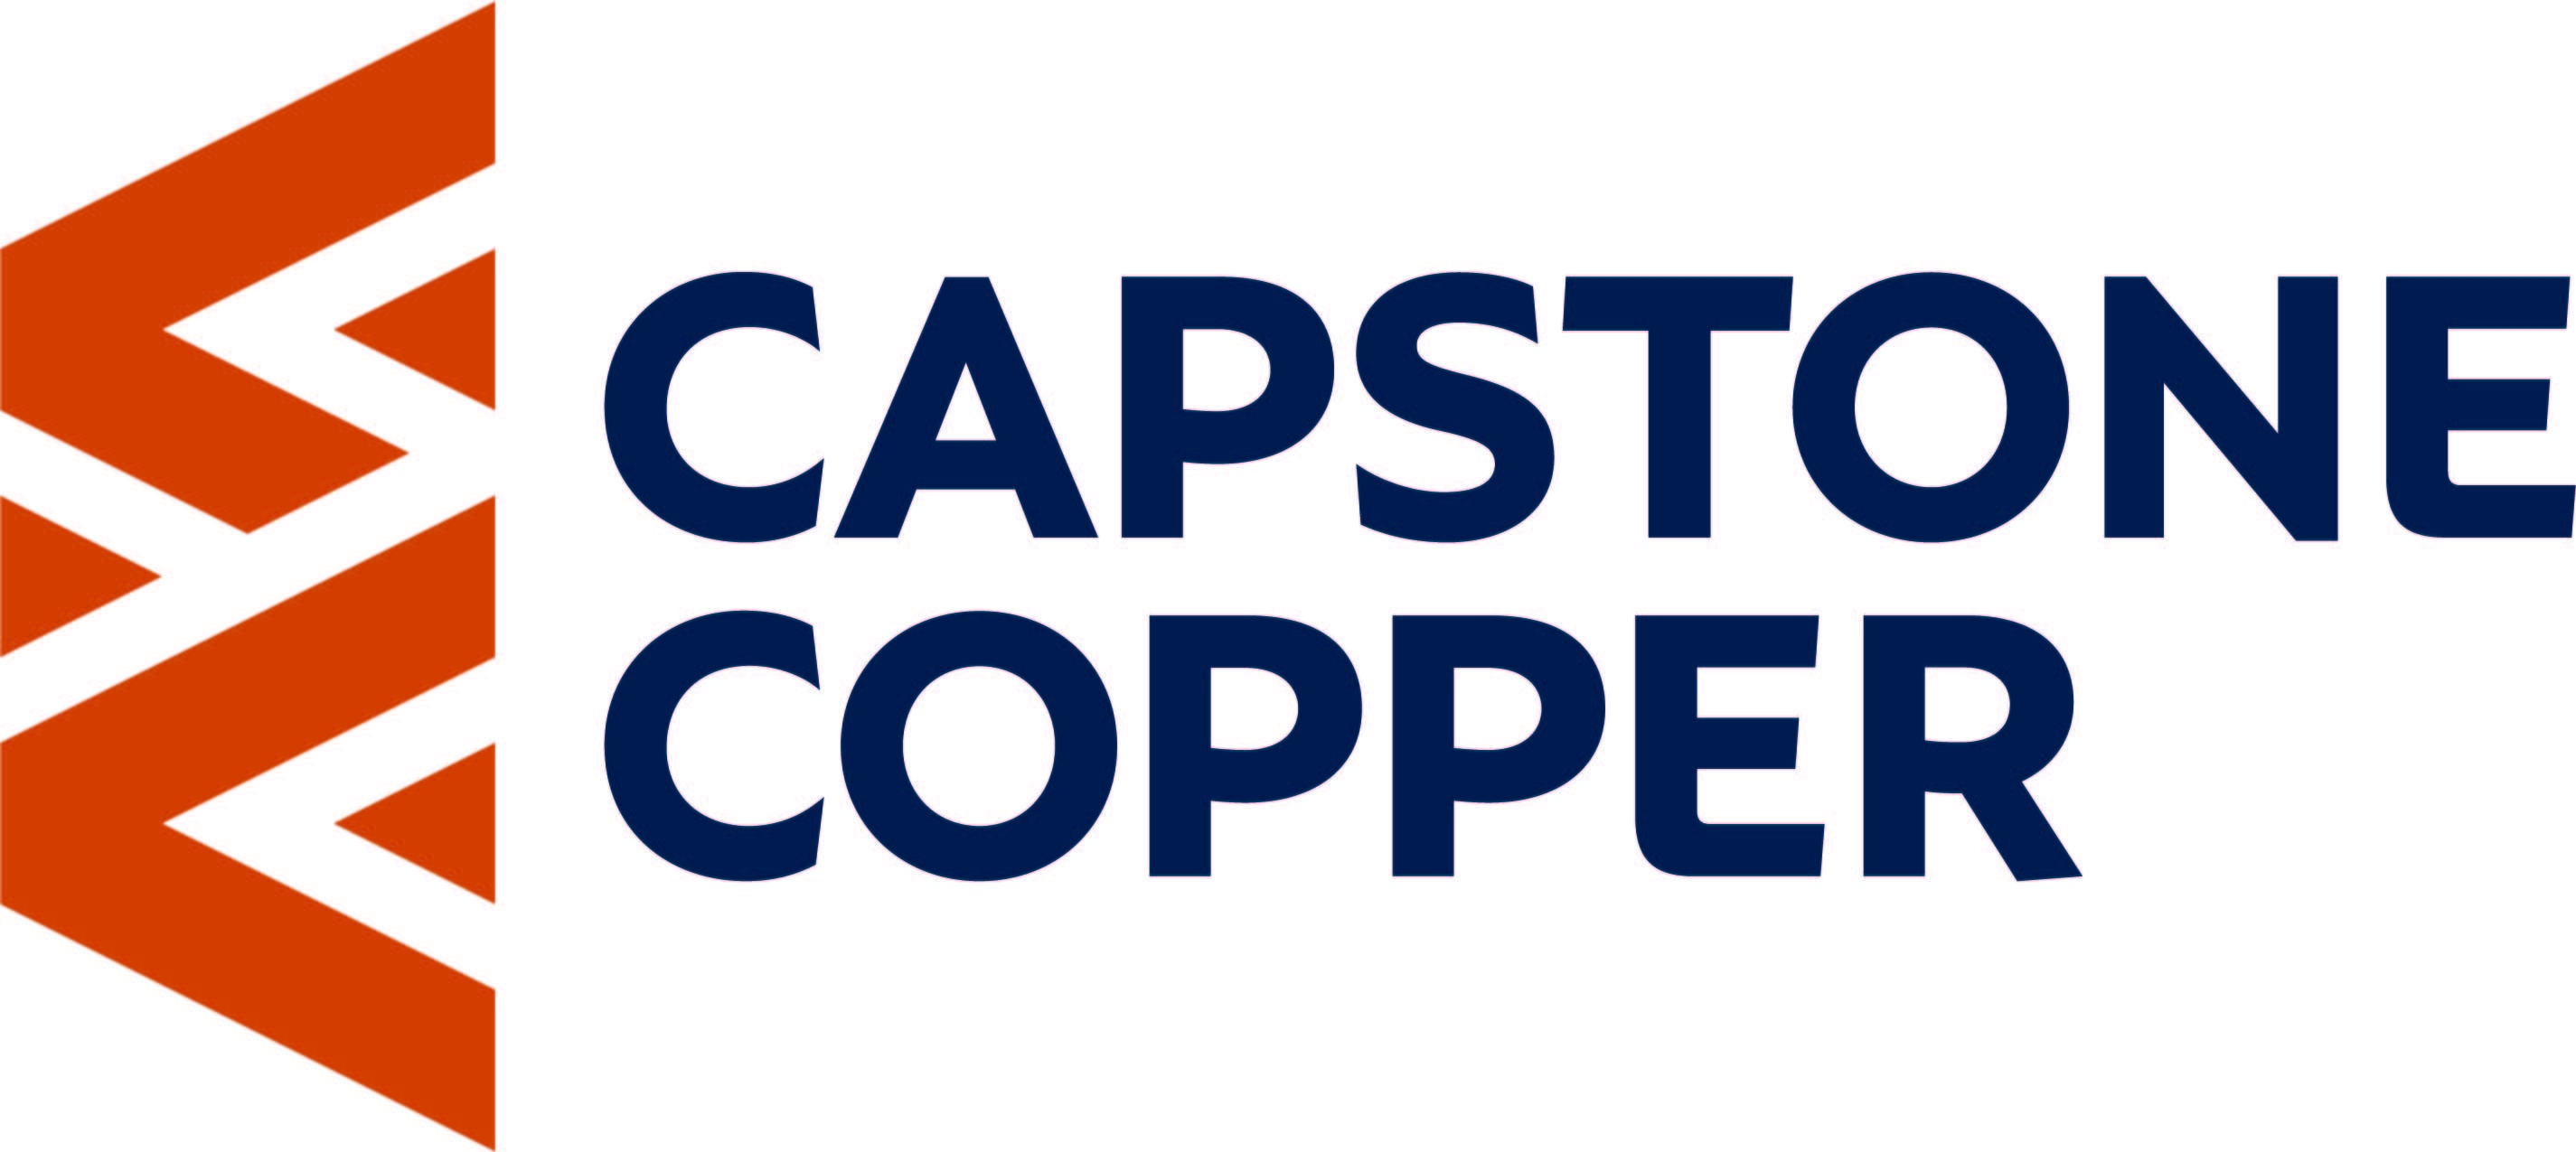 Capstone Copper